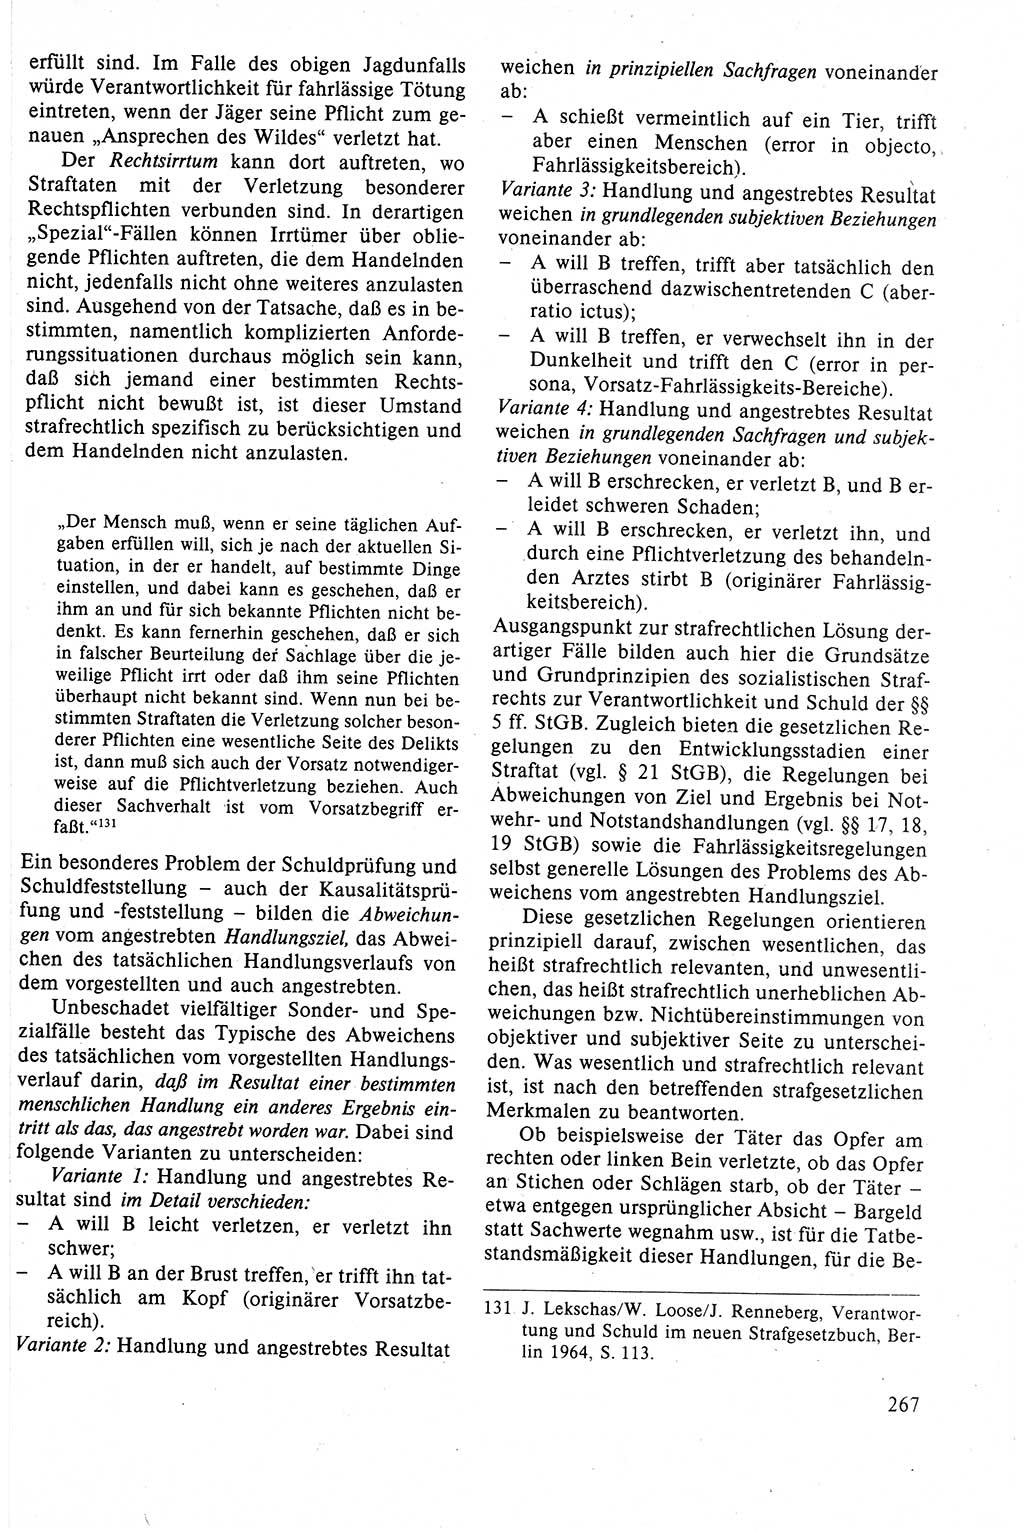 Strafrecht der DDR (Deutsche Demokratische Republik), Lehrbuch 1988, Seite 267 (Strafr. DDR Lb. 1988, S. 267)